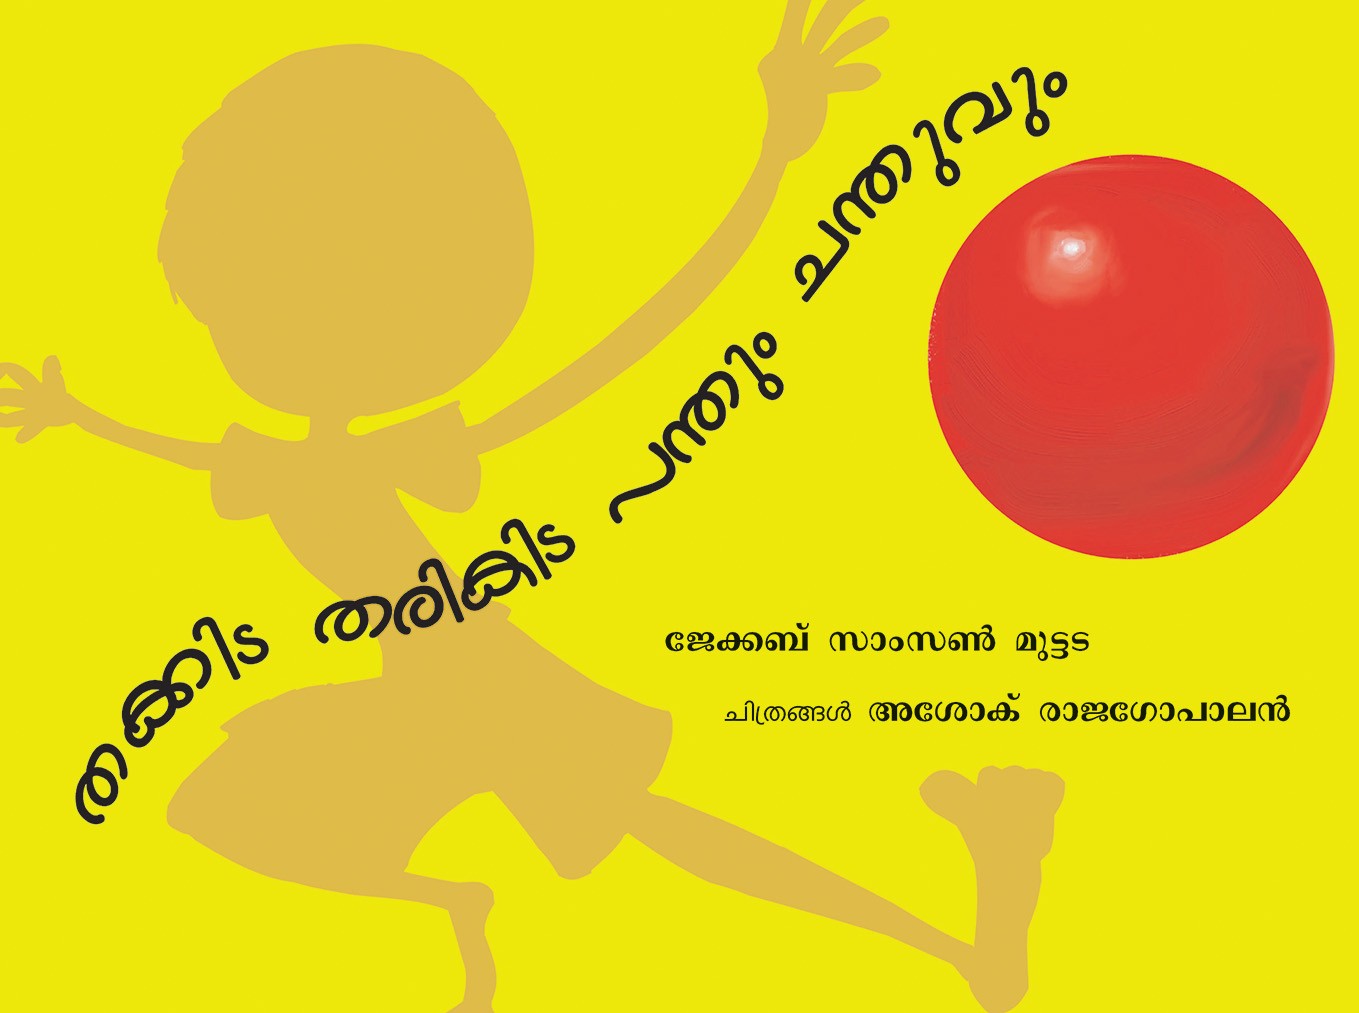 Thakitta Tharikitta Bouncing Ball/Thakitta Tharikitta Pandum Chanduvum (Malayalam)